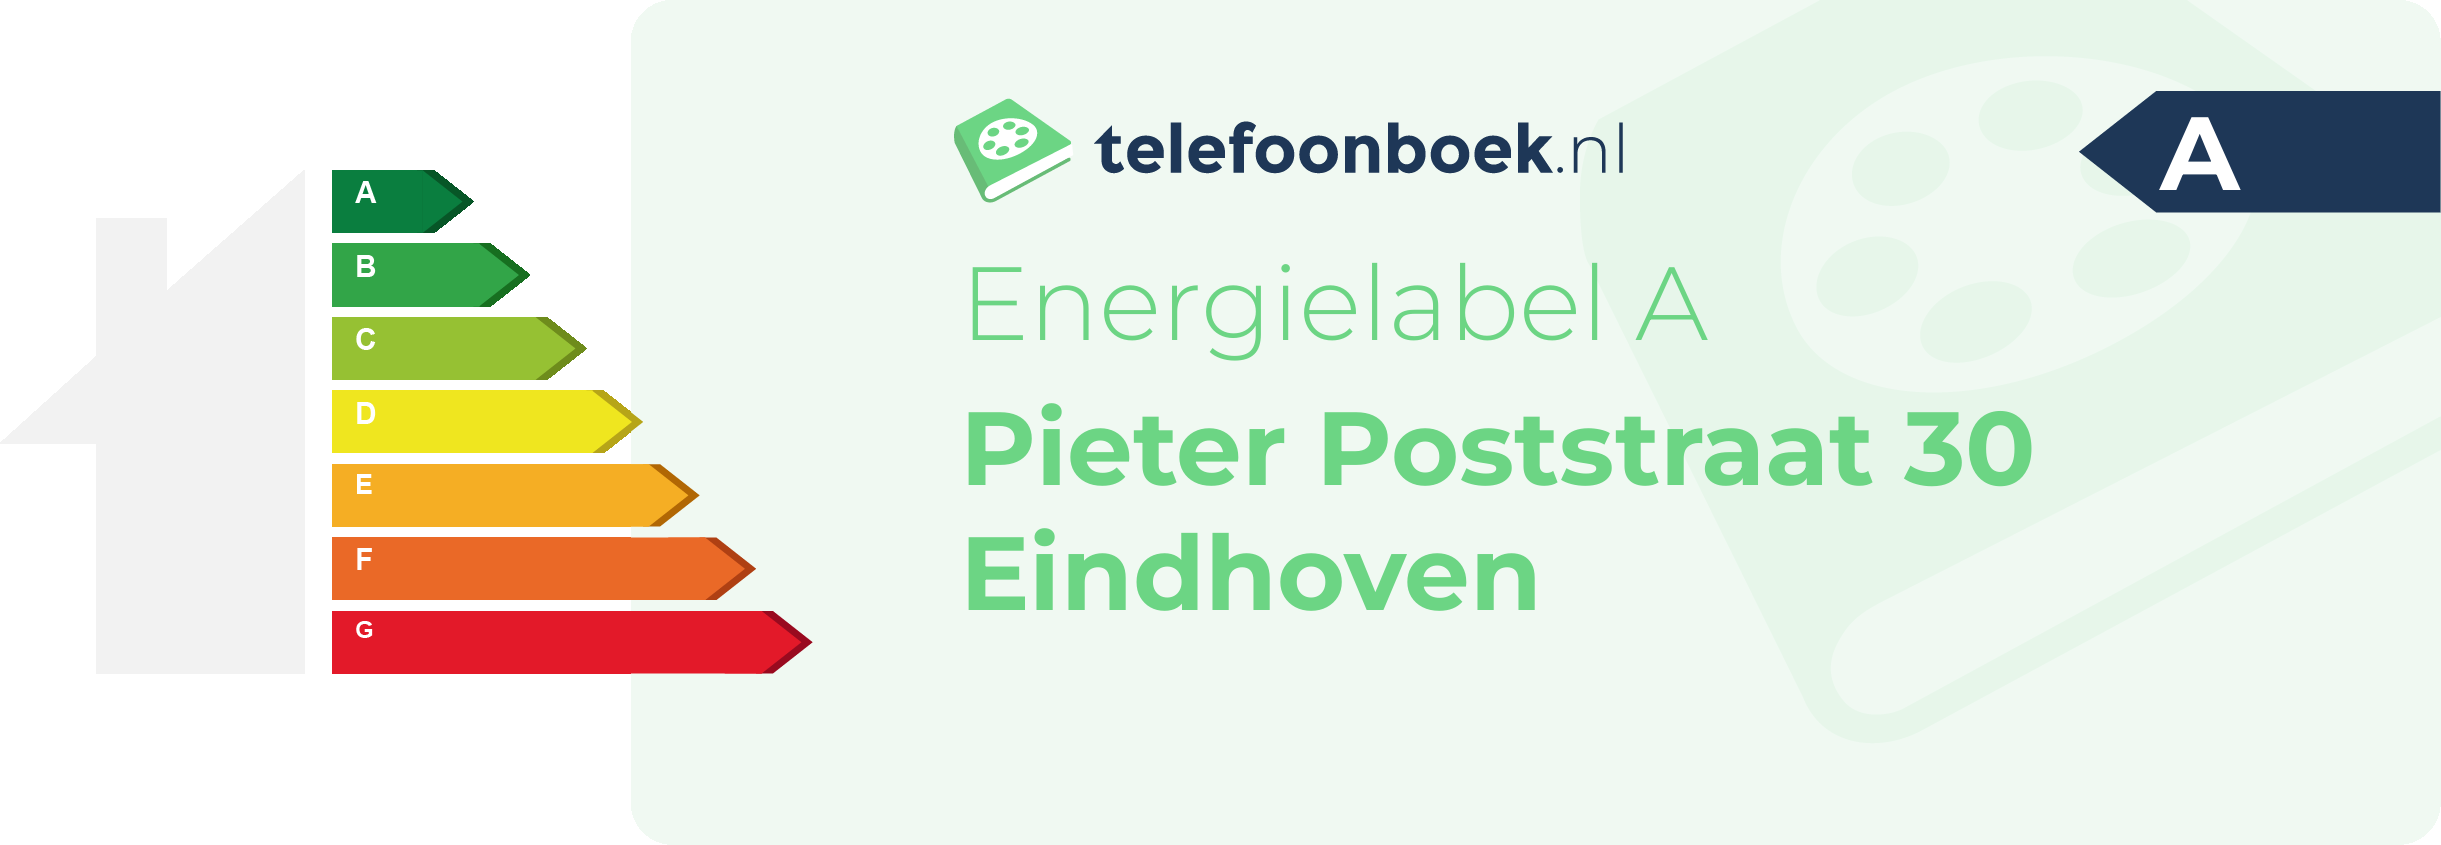 Energielabel Pieter Poststraat 30 Eindhoven